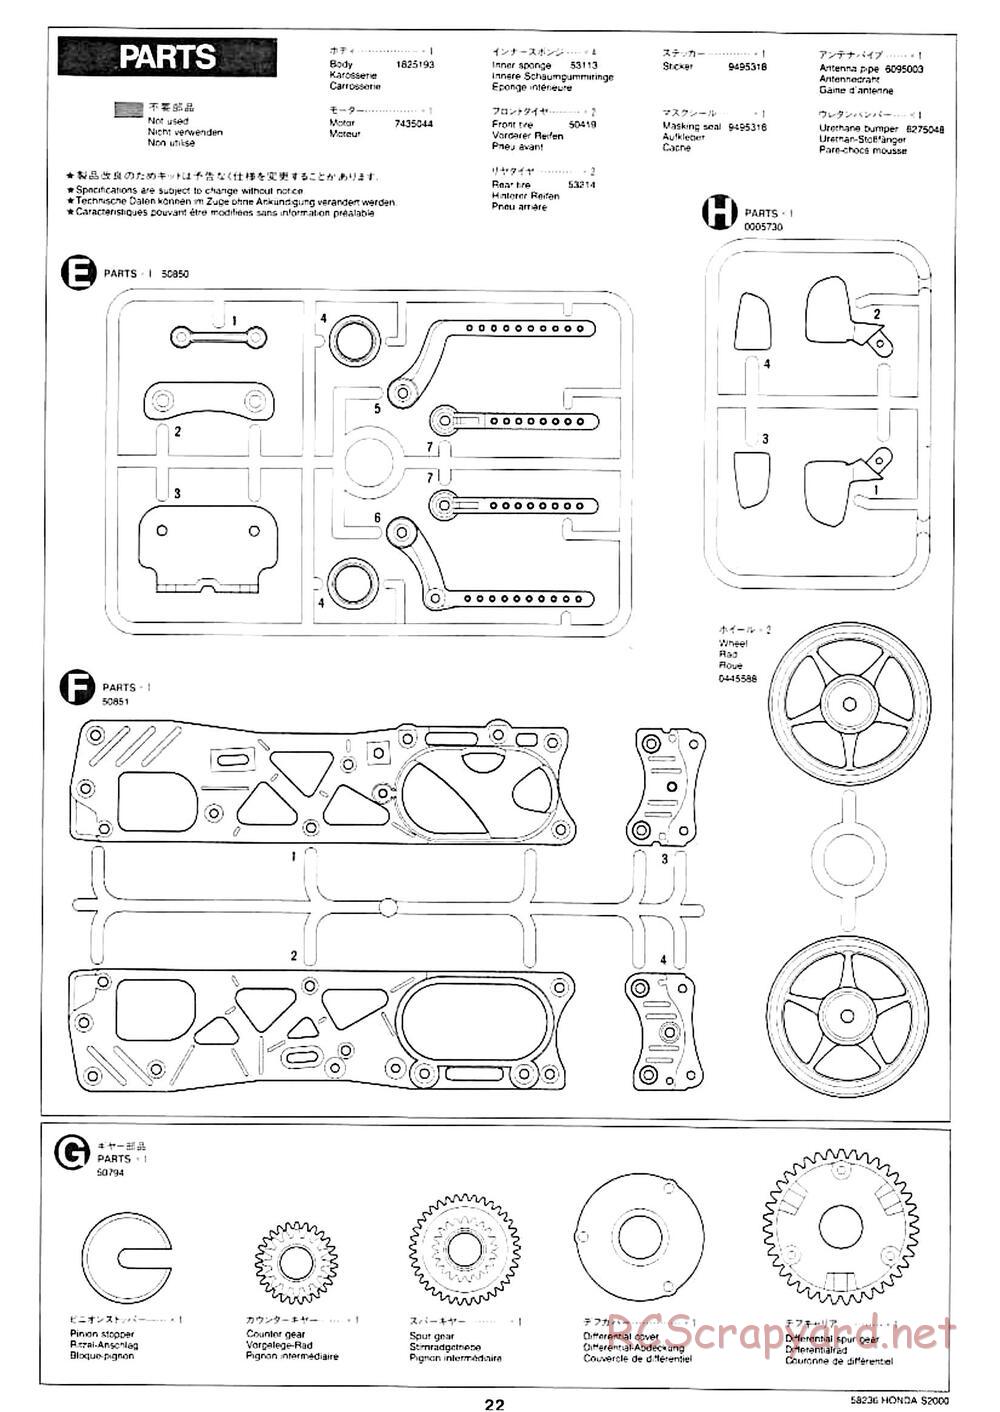 Tamiya - Honda S2000 - M04L Chassis - Manual - Page 18